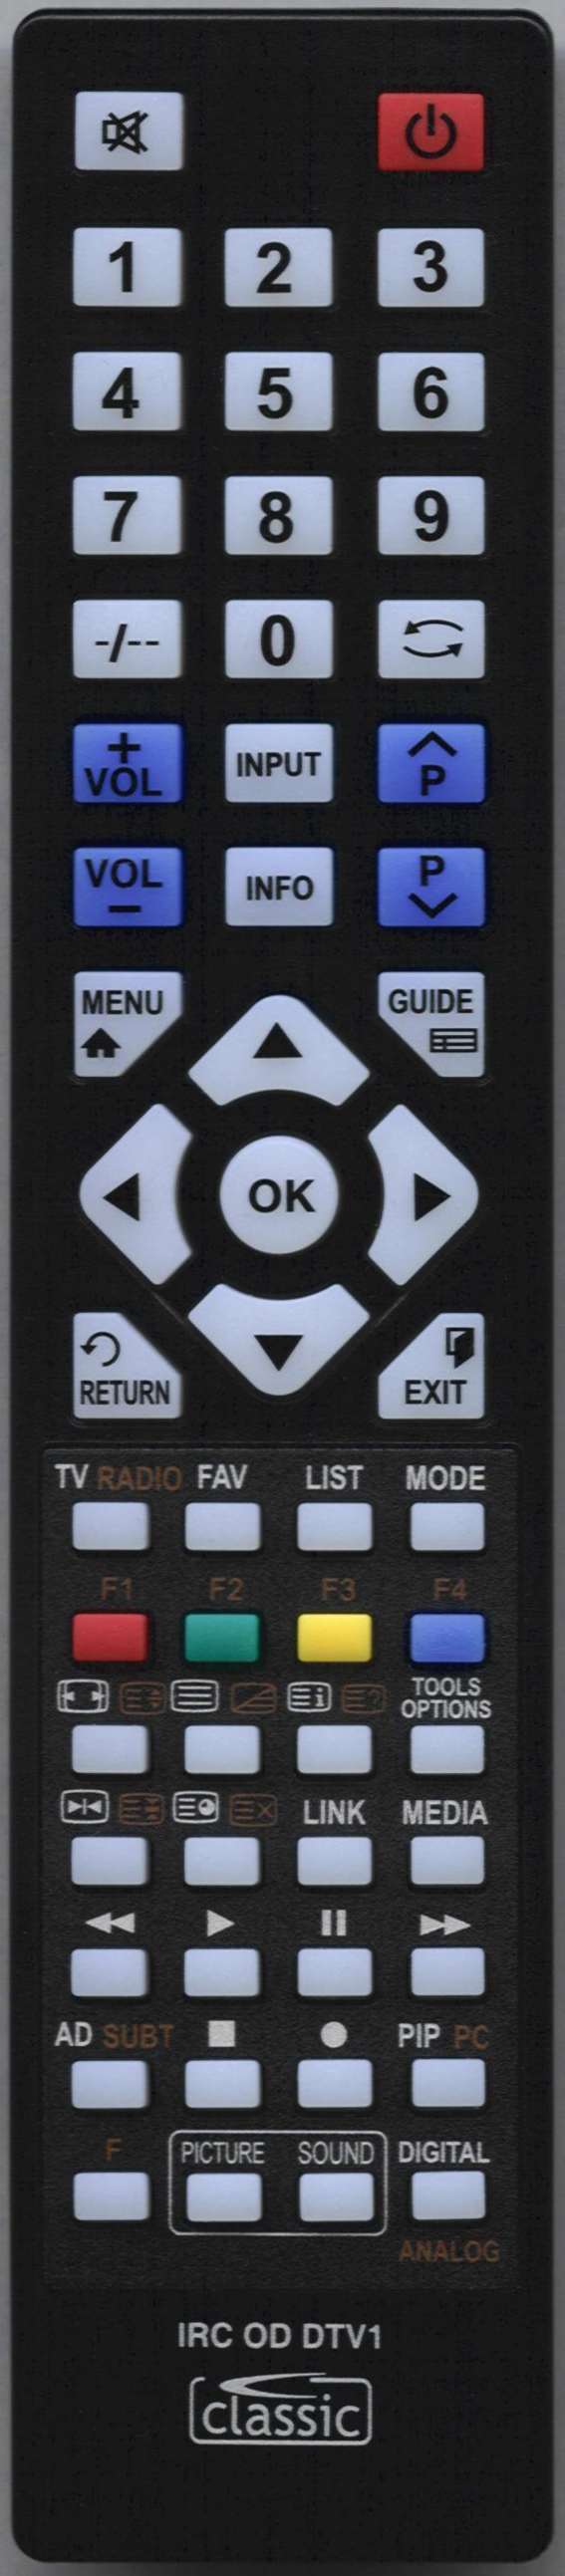 SANYO CE32LD81 Remote Control Alternative 